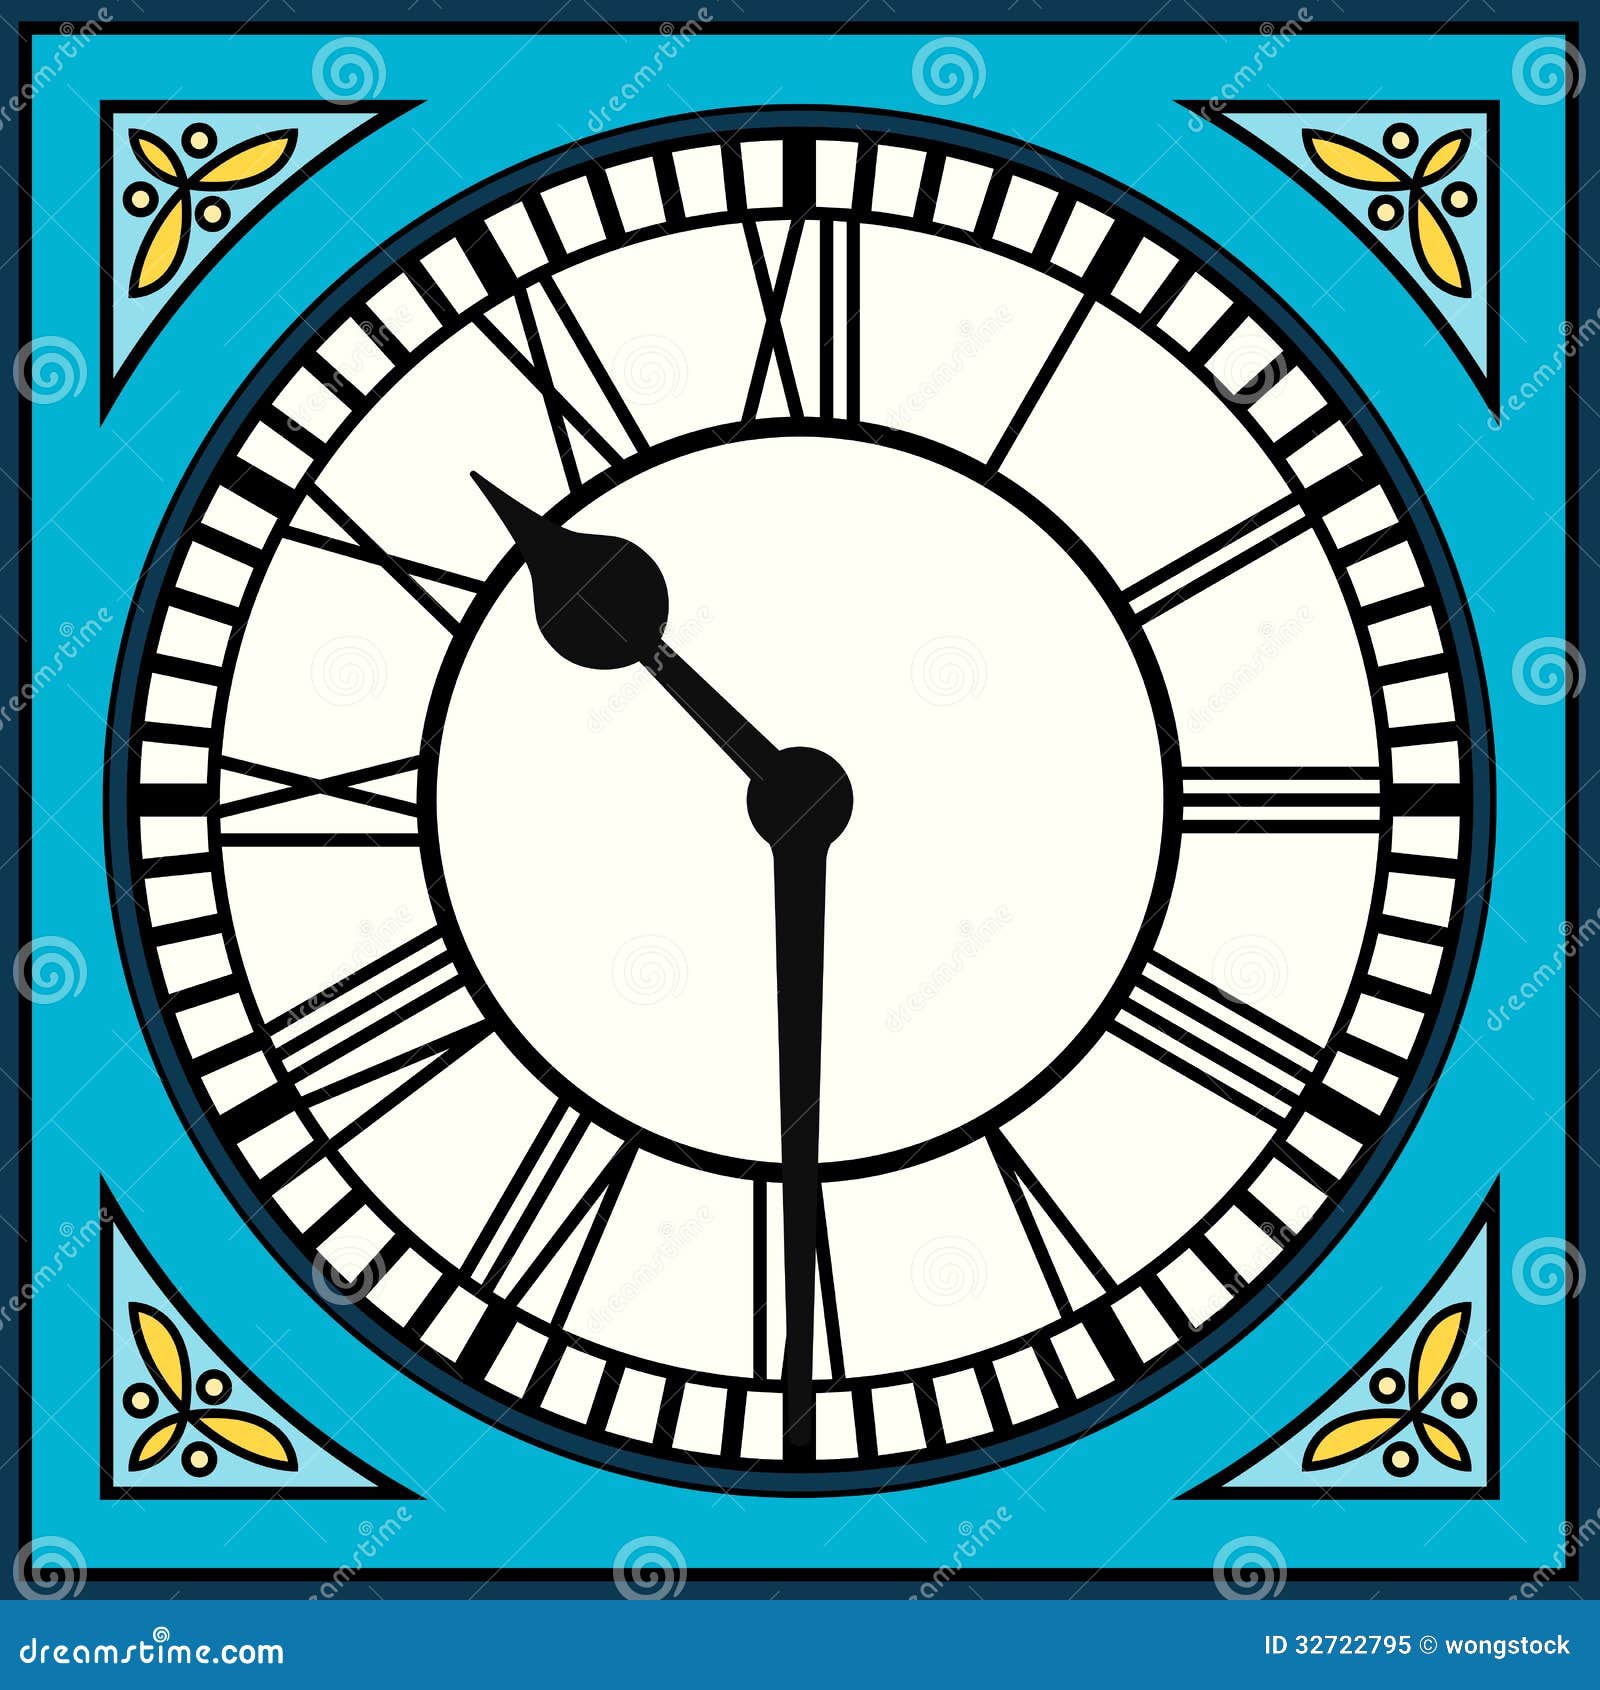 4:30, Digital clock number. Vector illustration. Stock Vector